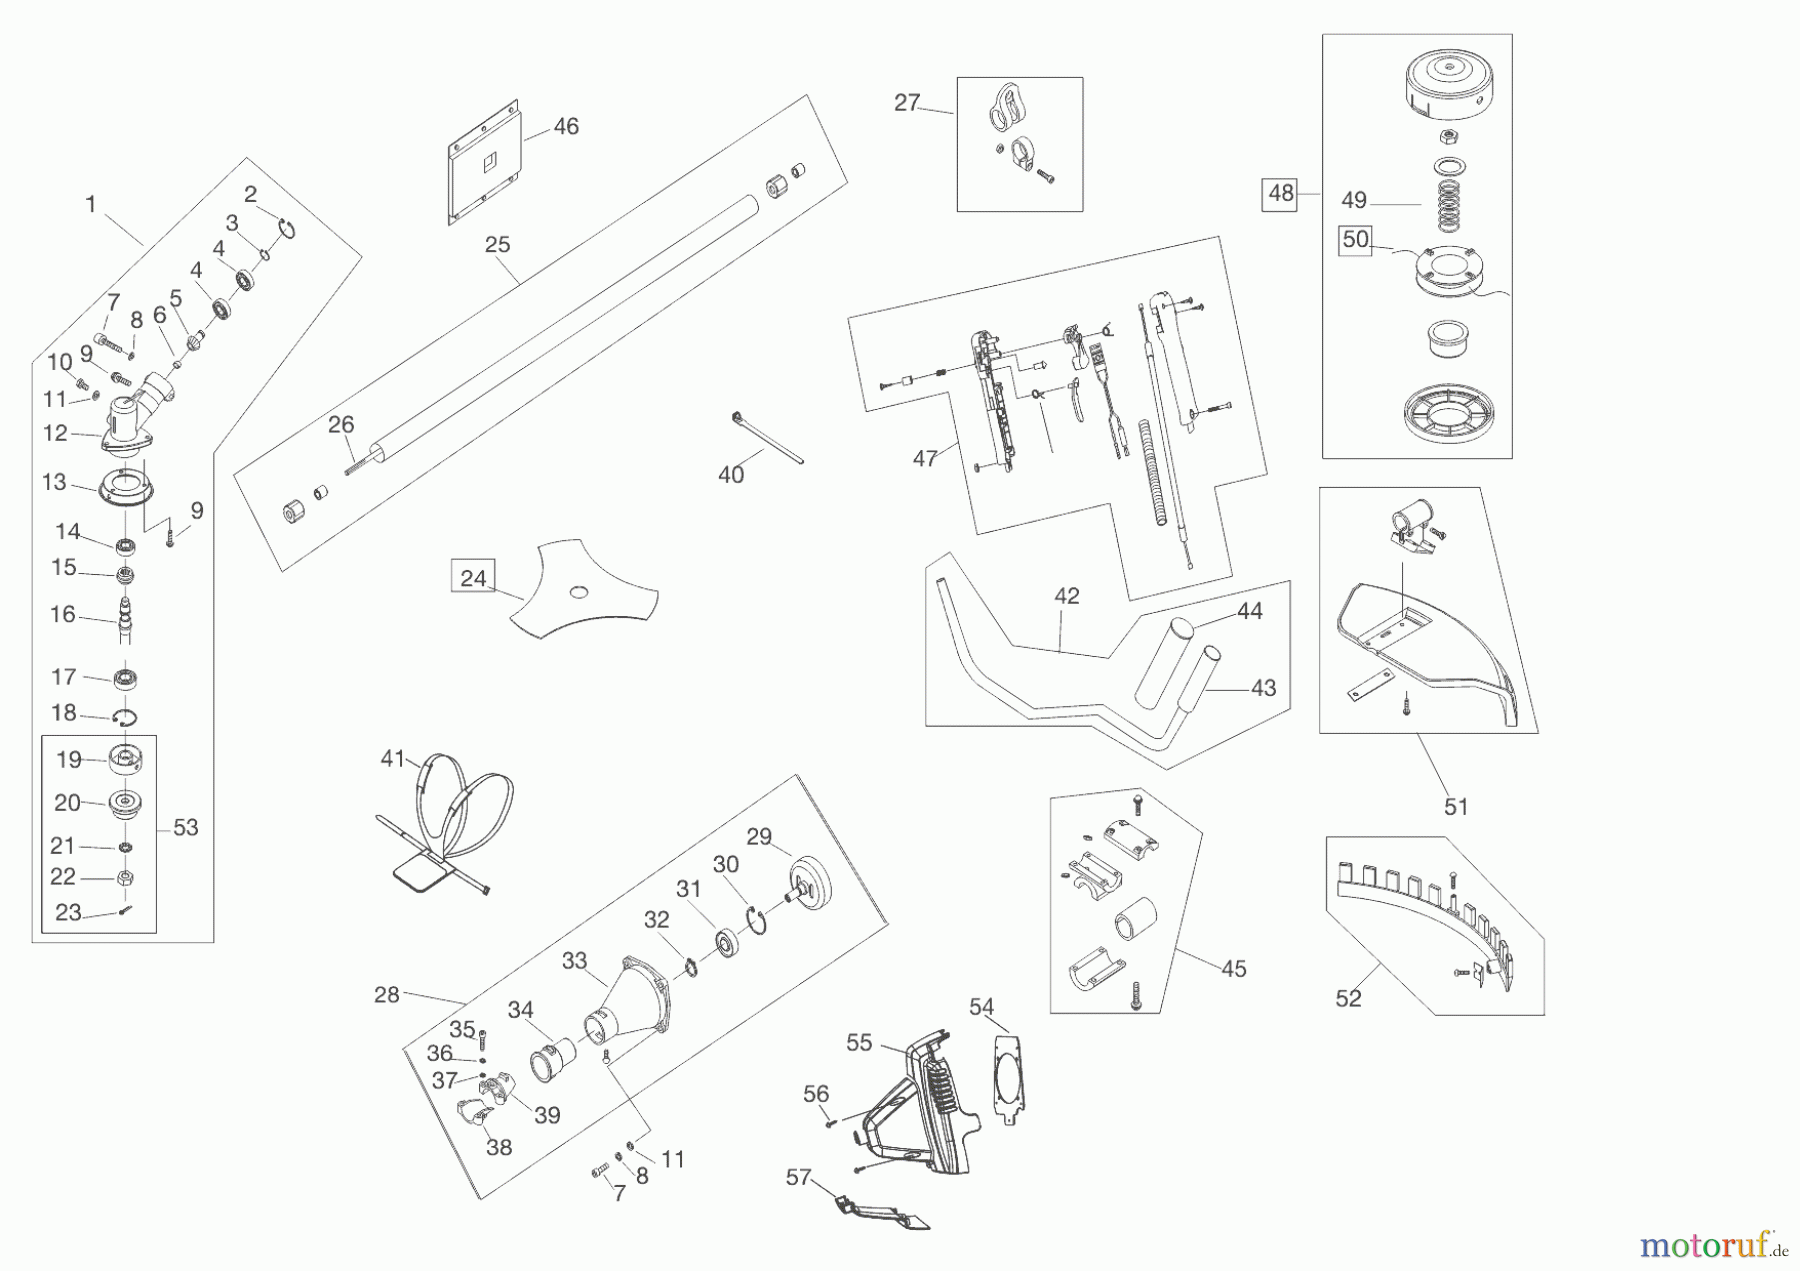  AL-KO Gartentechnik Motorsensen BC 4535 II Seite 1